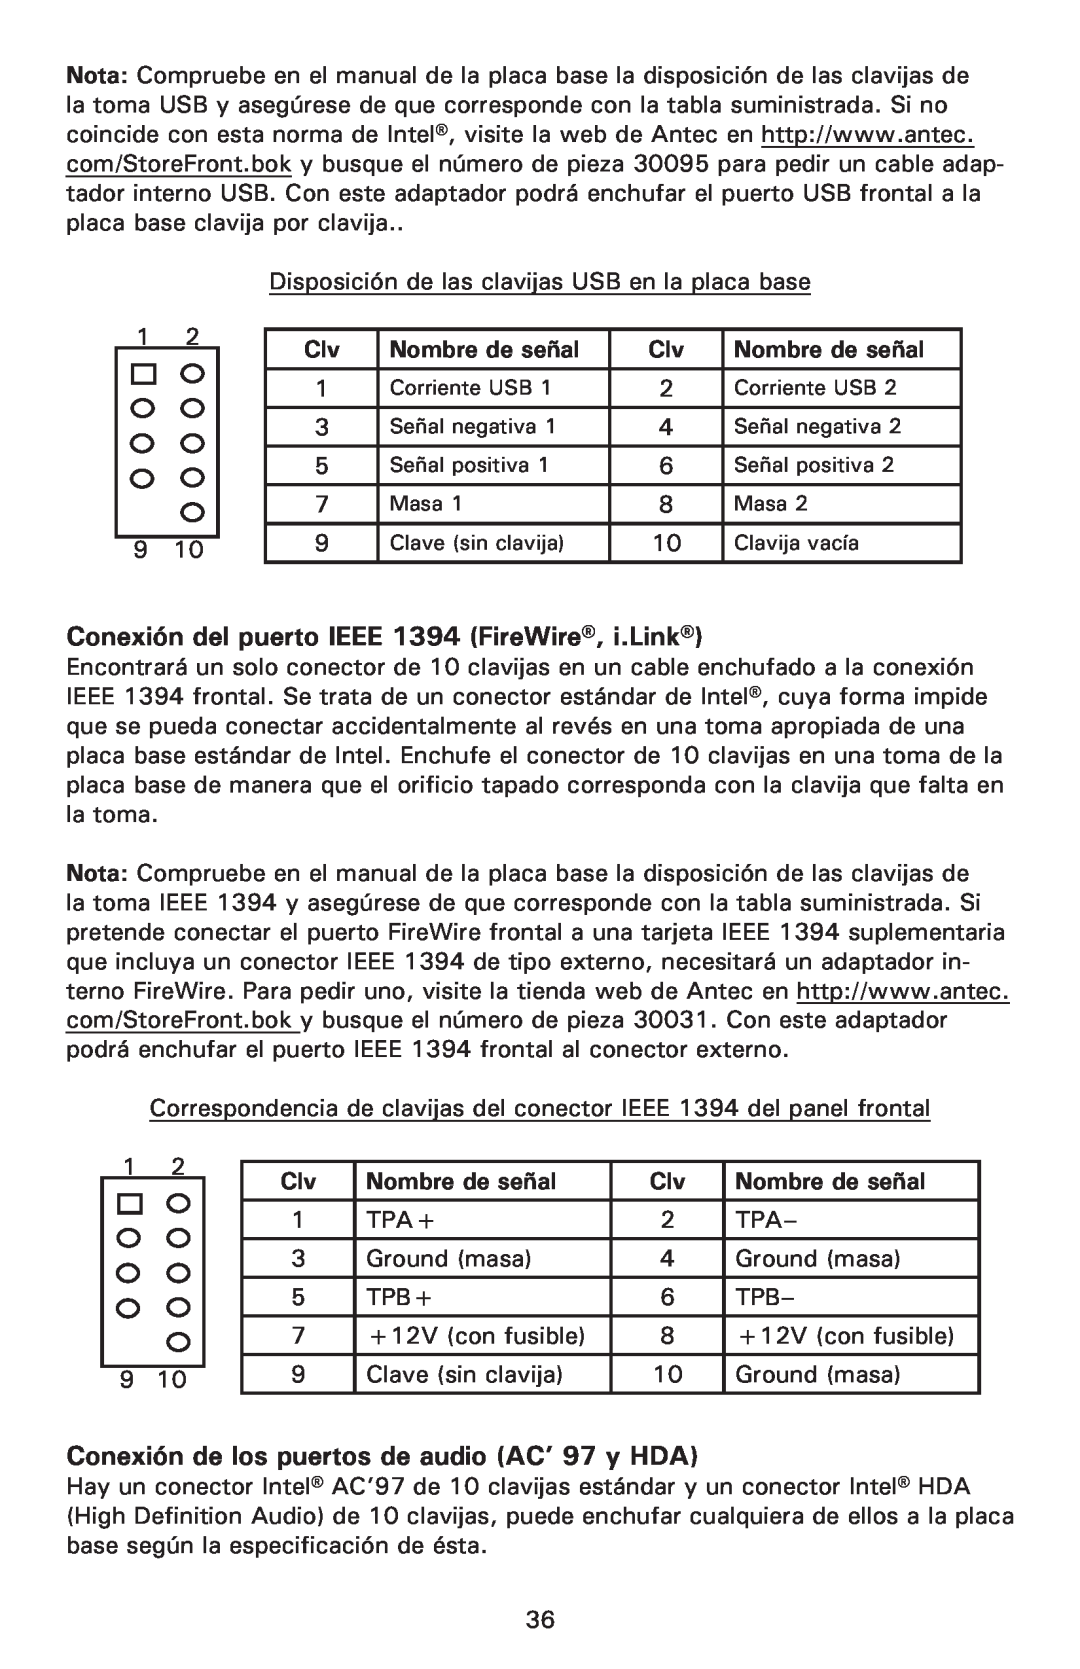 Antec P190 Conexión del puerto IEEE 1394 FireWire, i.Link, Conexión de los puertos de audio AC’ 97 y HDA, Nombre de señal 